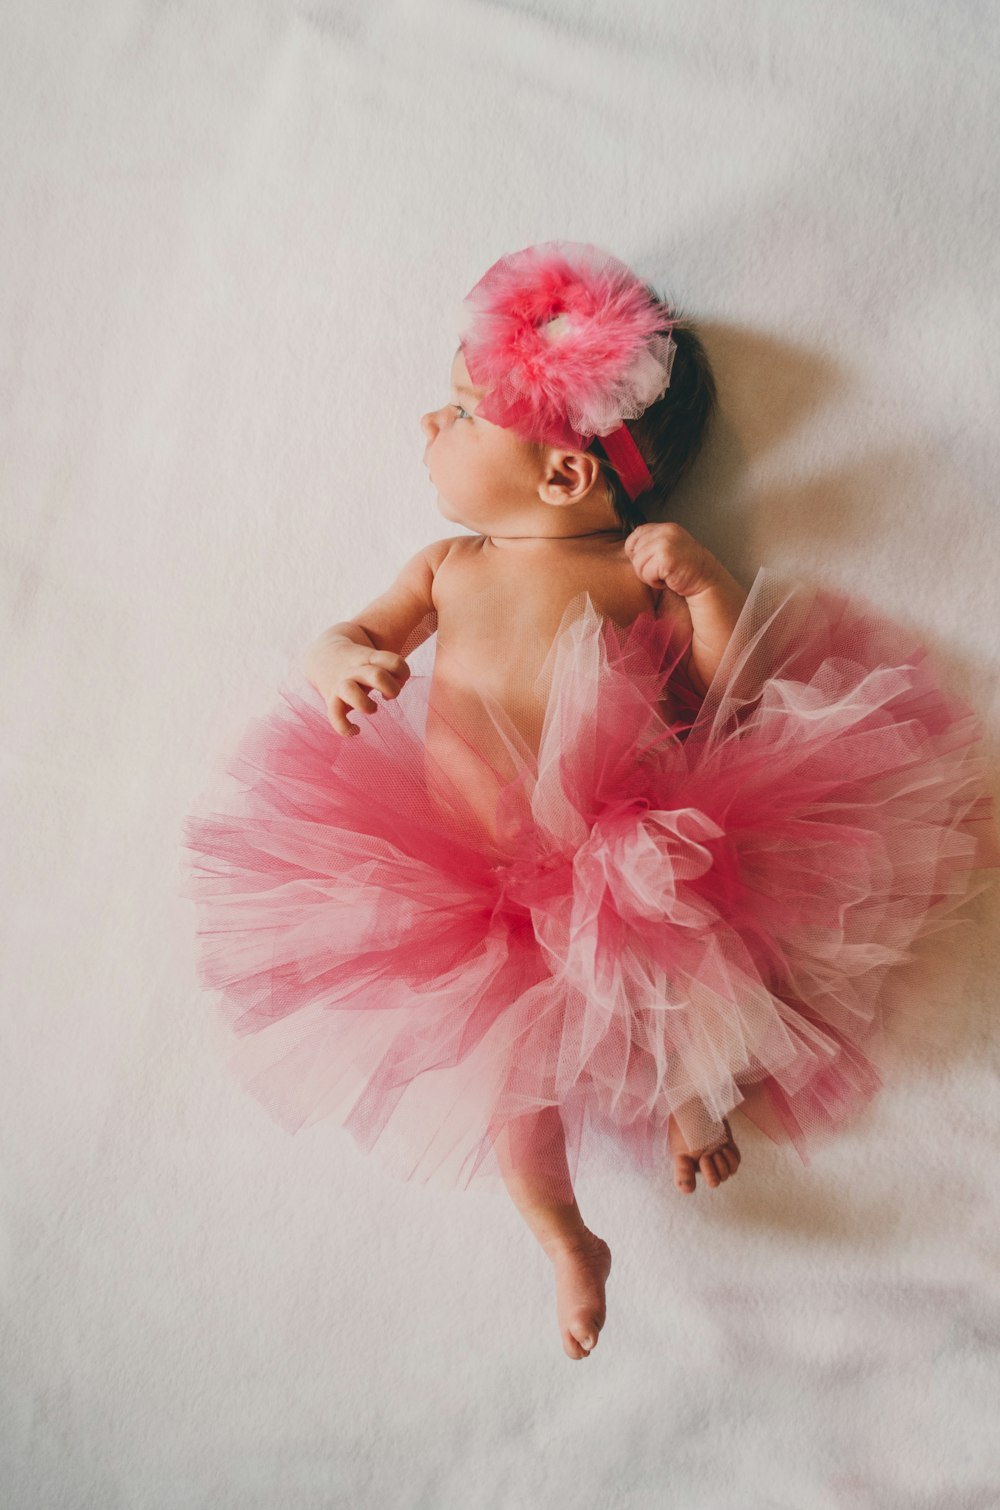 Baby trägt rosa Tutu-Kleid